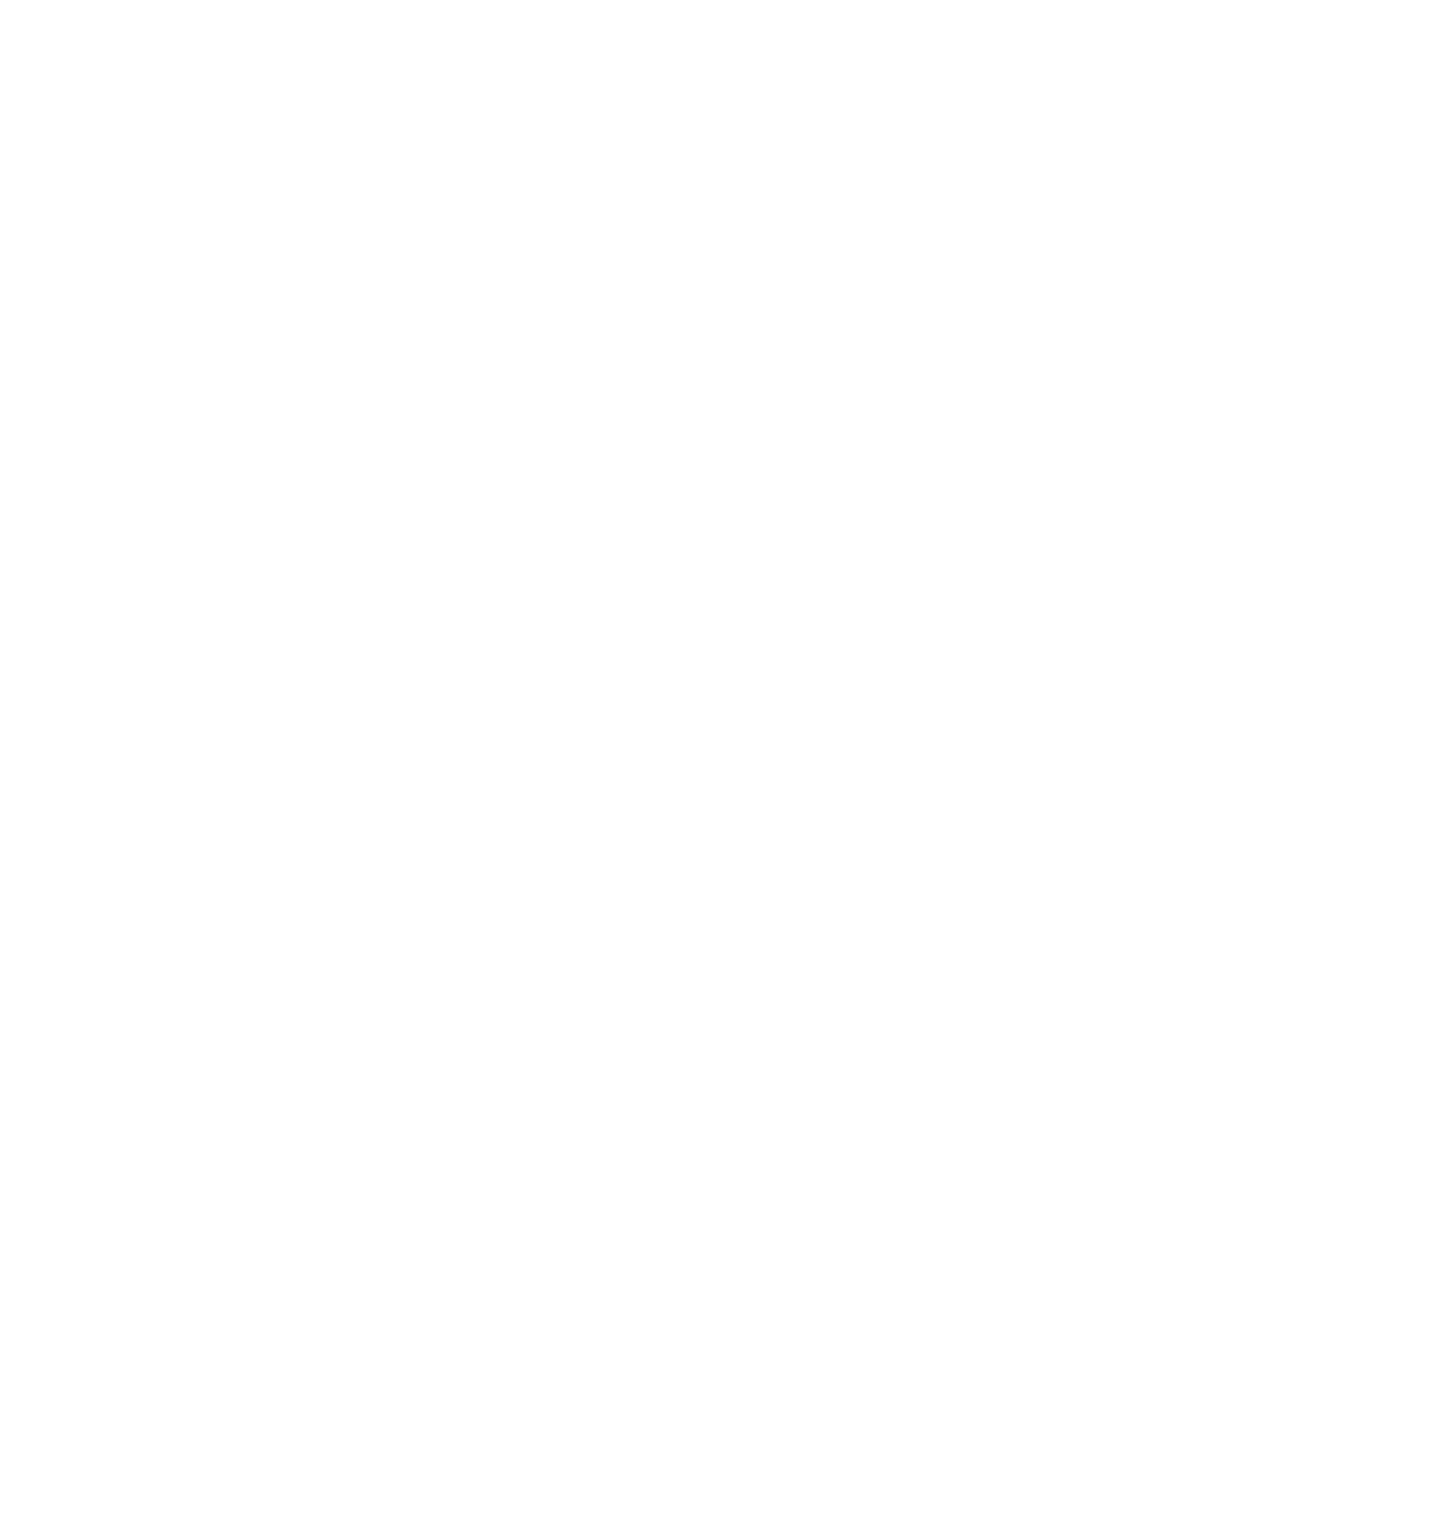 LivaNova logo for dark backgrounds (transparent PNG)